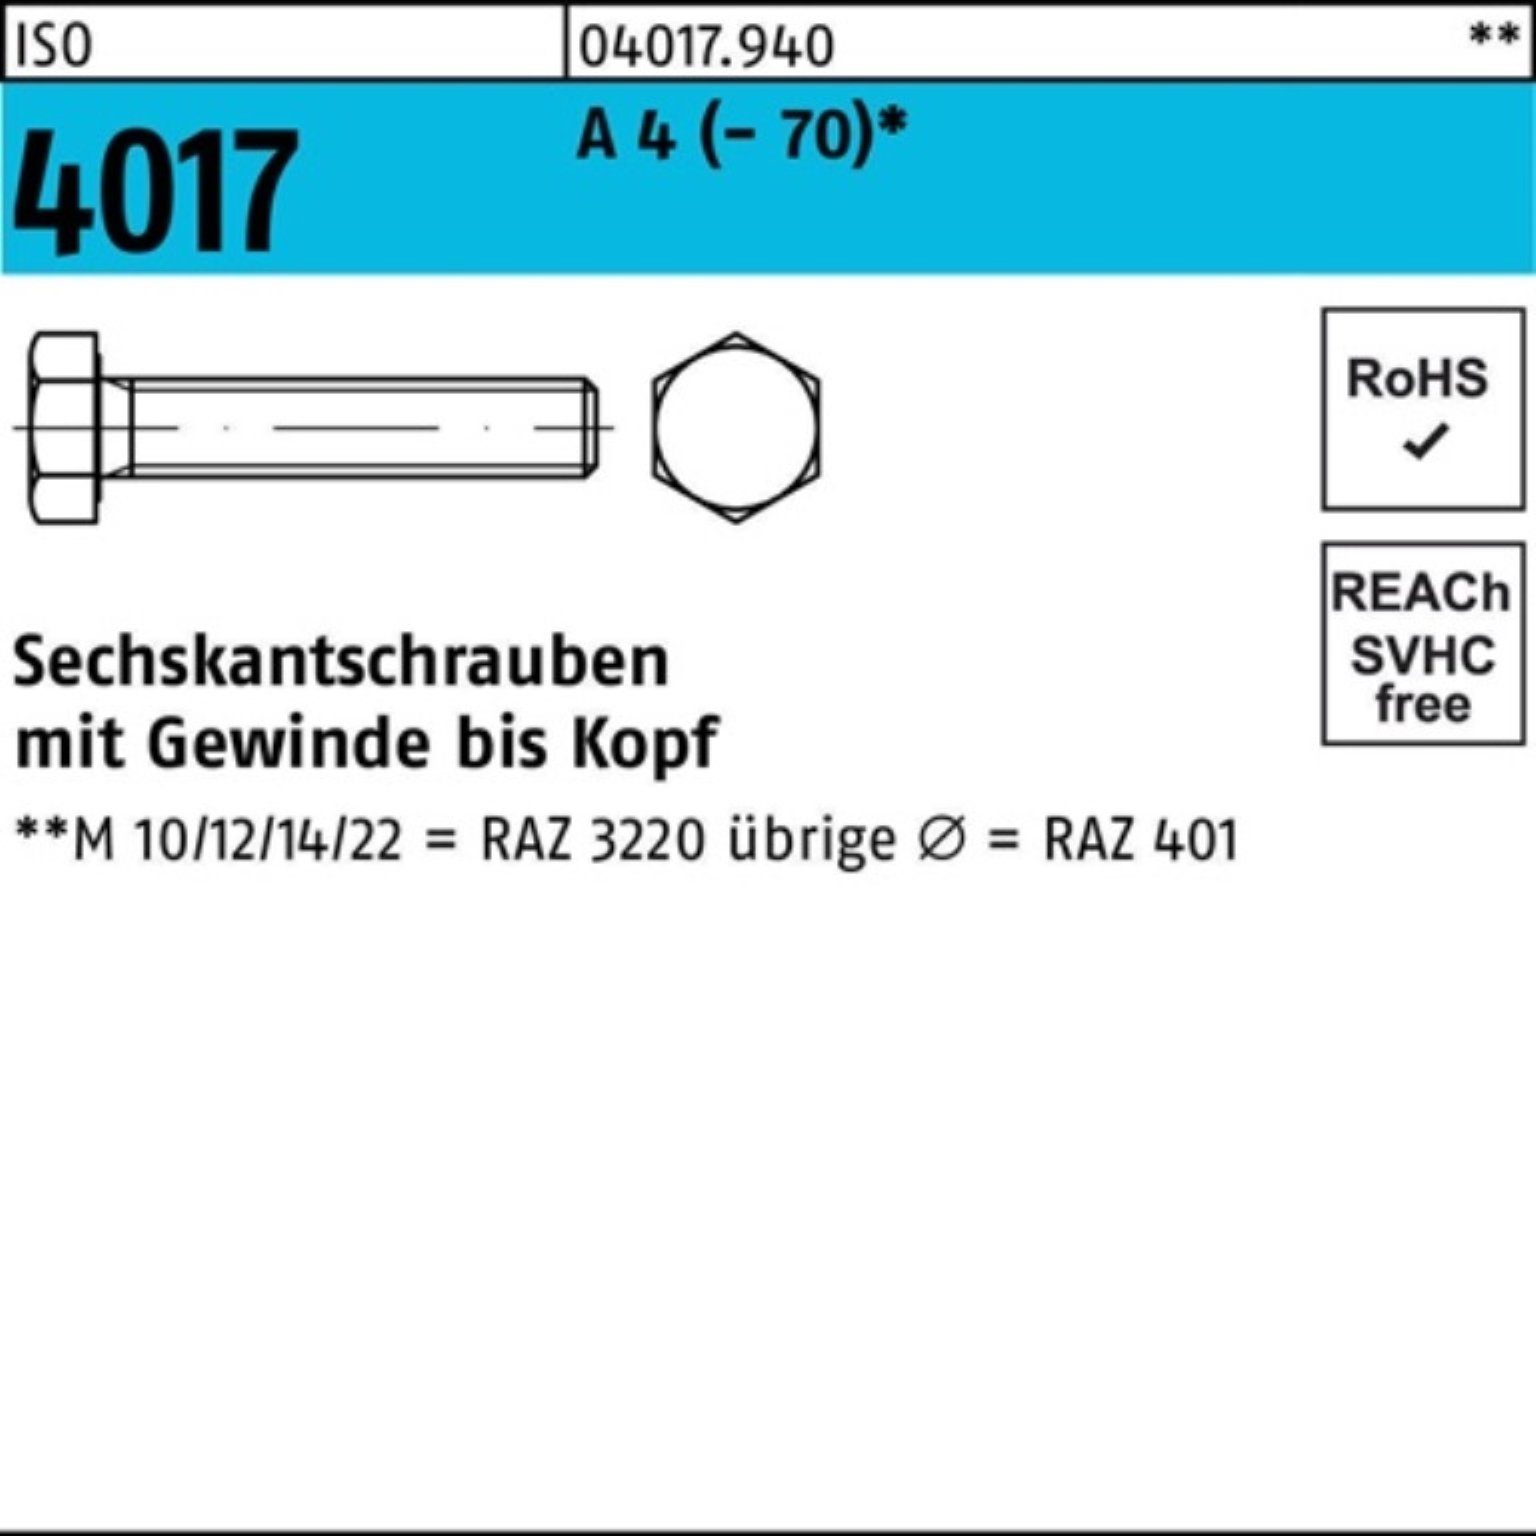 Bufab Sechskantschraube 100er Pack Sechskantschraube ISO 4017 VG M10x 180 A 4 (70) 1 Stück